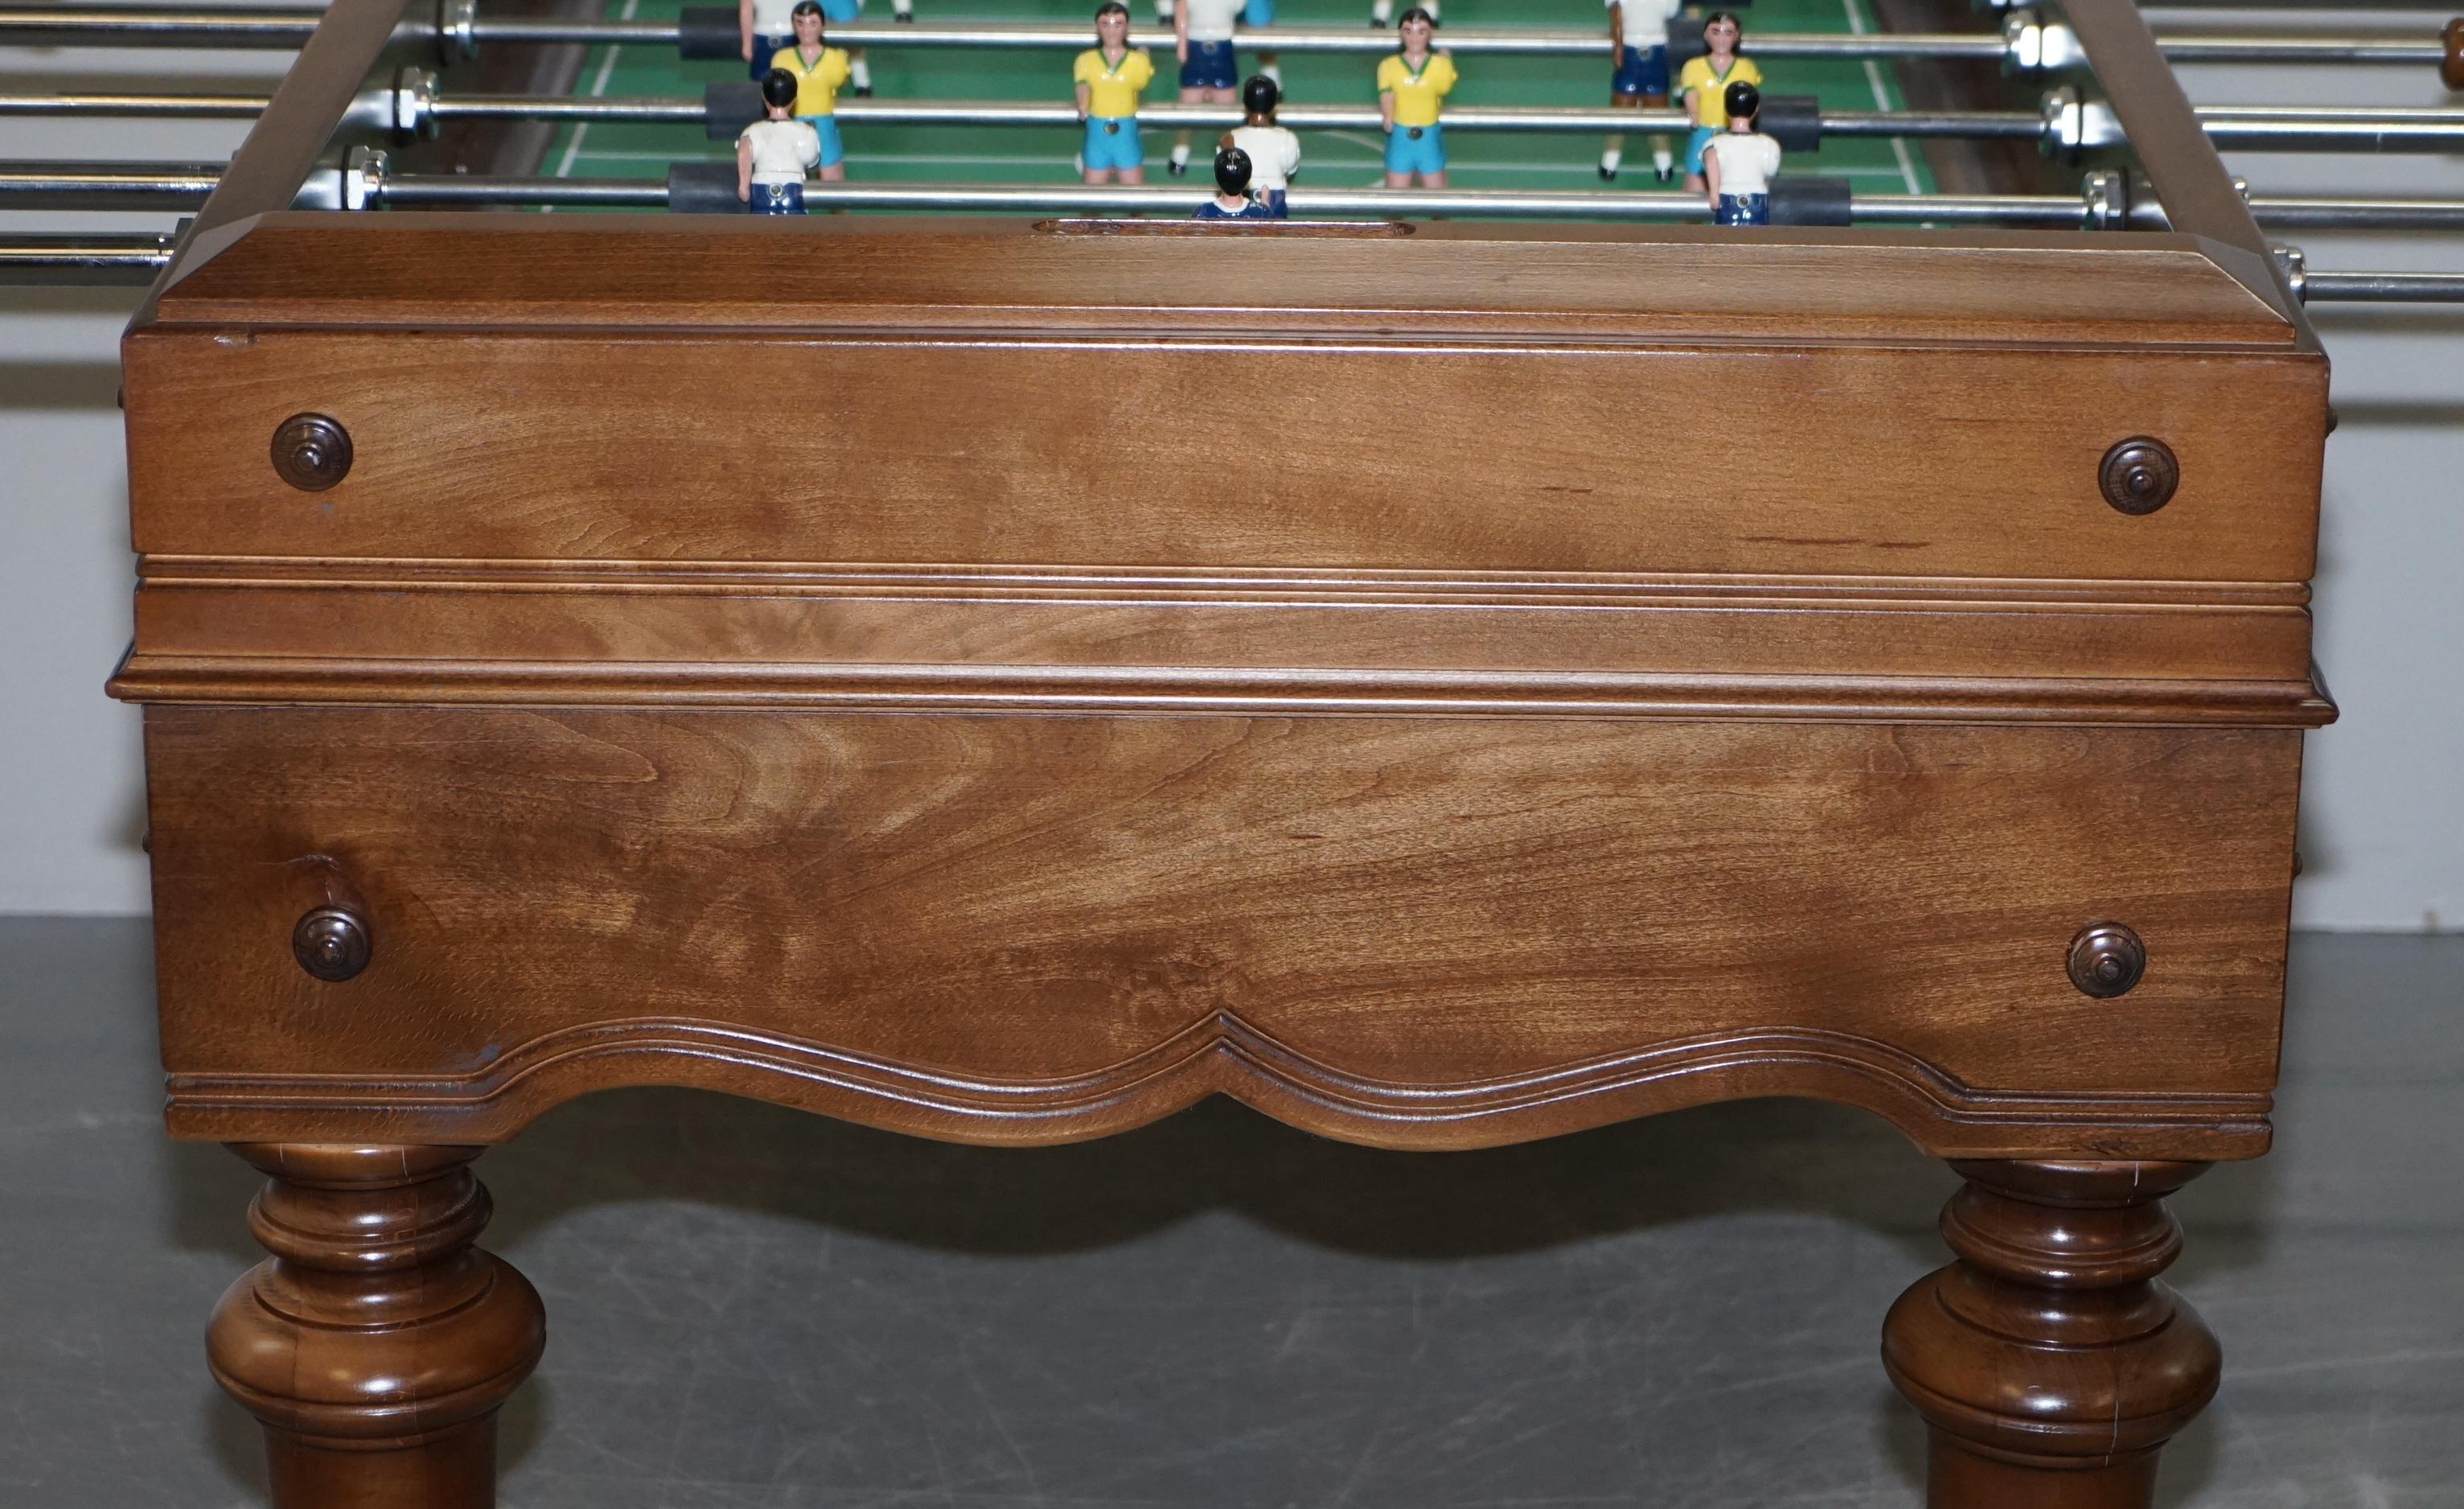 Vintage Large Professional Foosball Table Football Oak Frame Steel Players 1